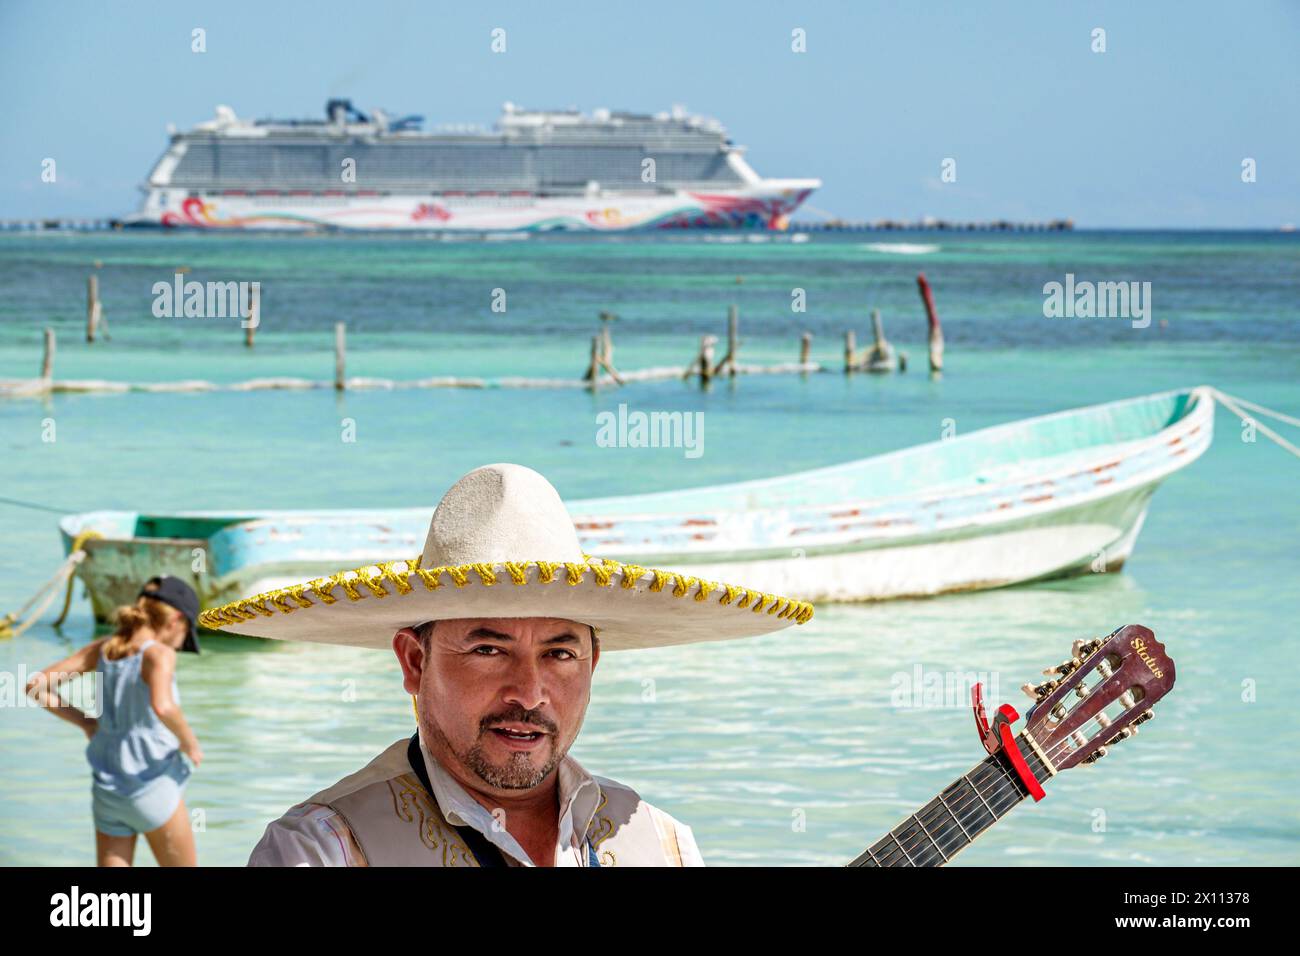 Costa Maya Mexique, Port de croisière, navire Norwegian Joy Cruise Line, itinéraire de 7 jours de la mer des Caraïbes, Playa Mahahual Beach Malecon, homme hispanique musicien Mariachi Banque D'Images